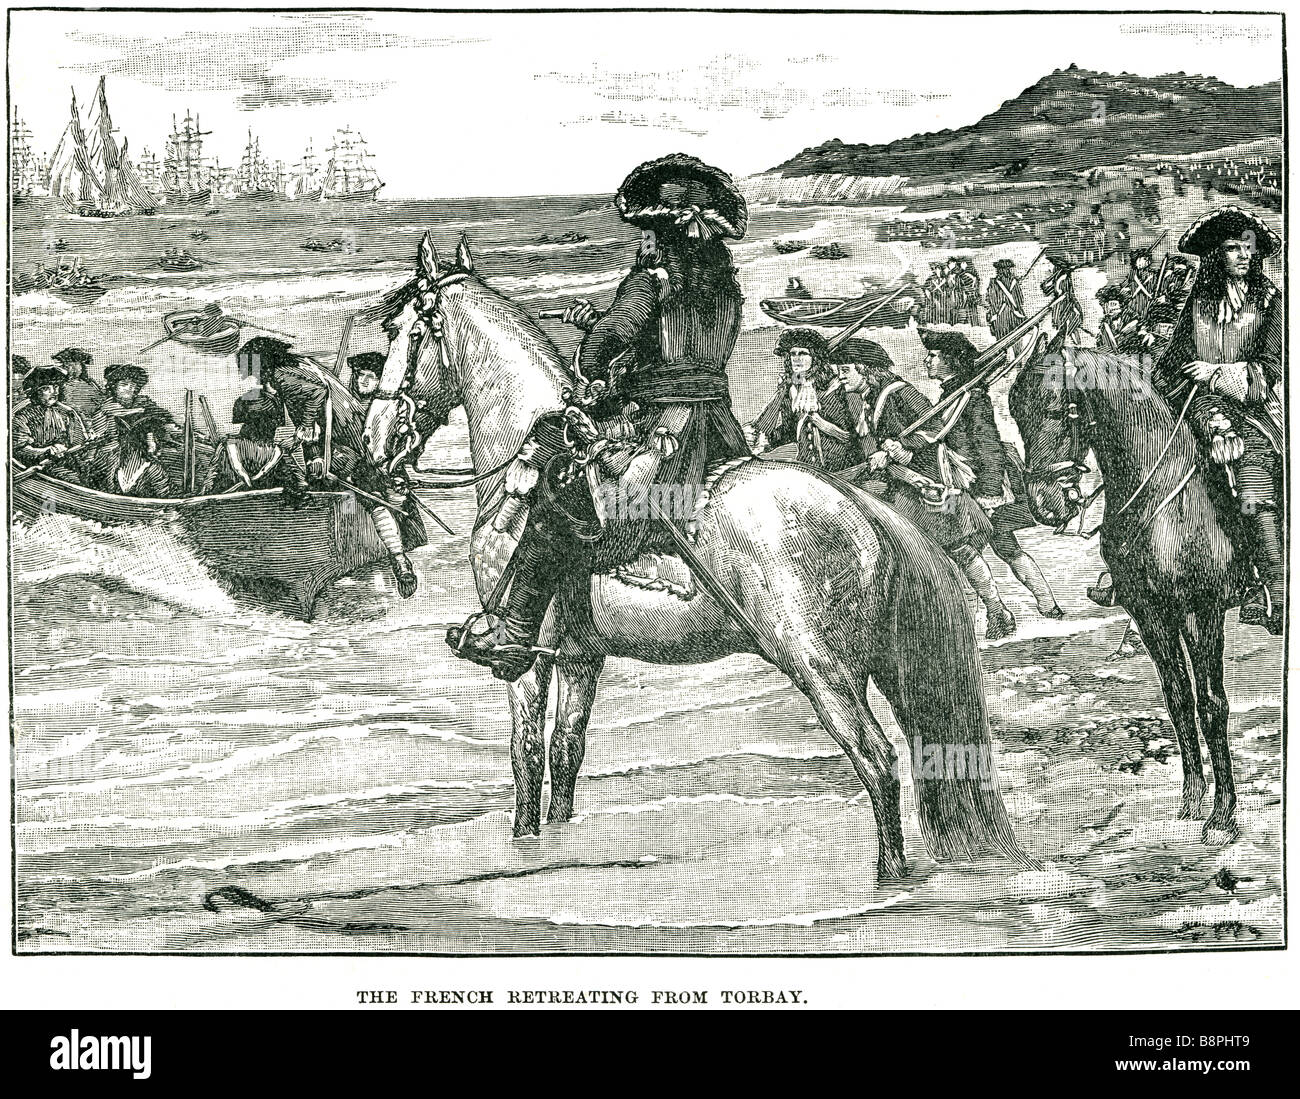 Le retrait français de l'uniforme militaire soldat torbay angleterre sea shore beach robe période à cheval à la retraite de l'armée de voile shi Banque D'Images